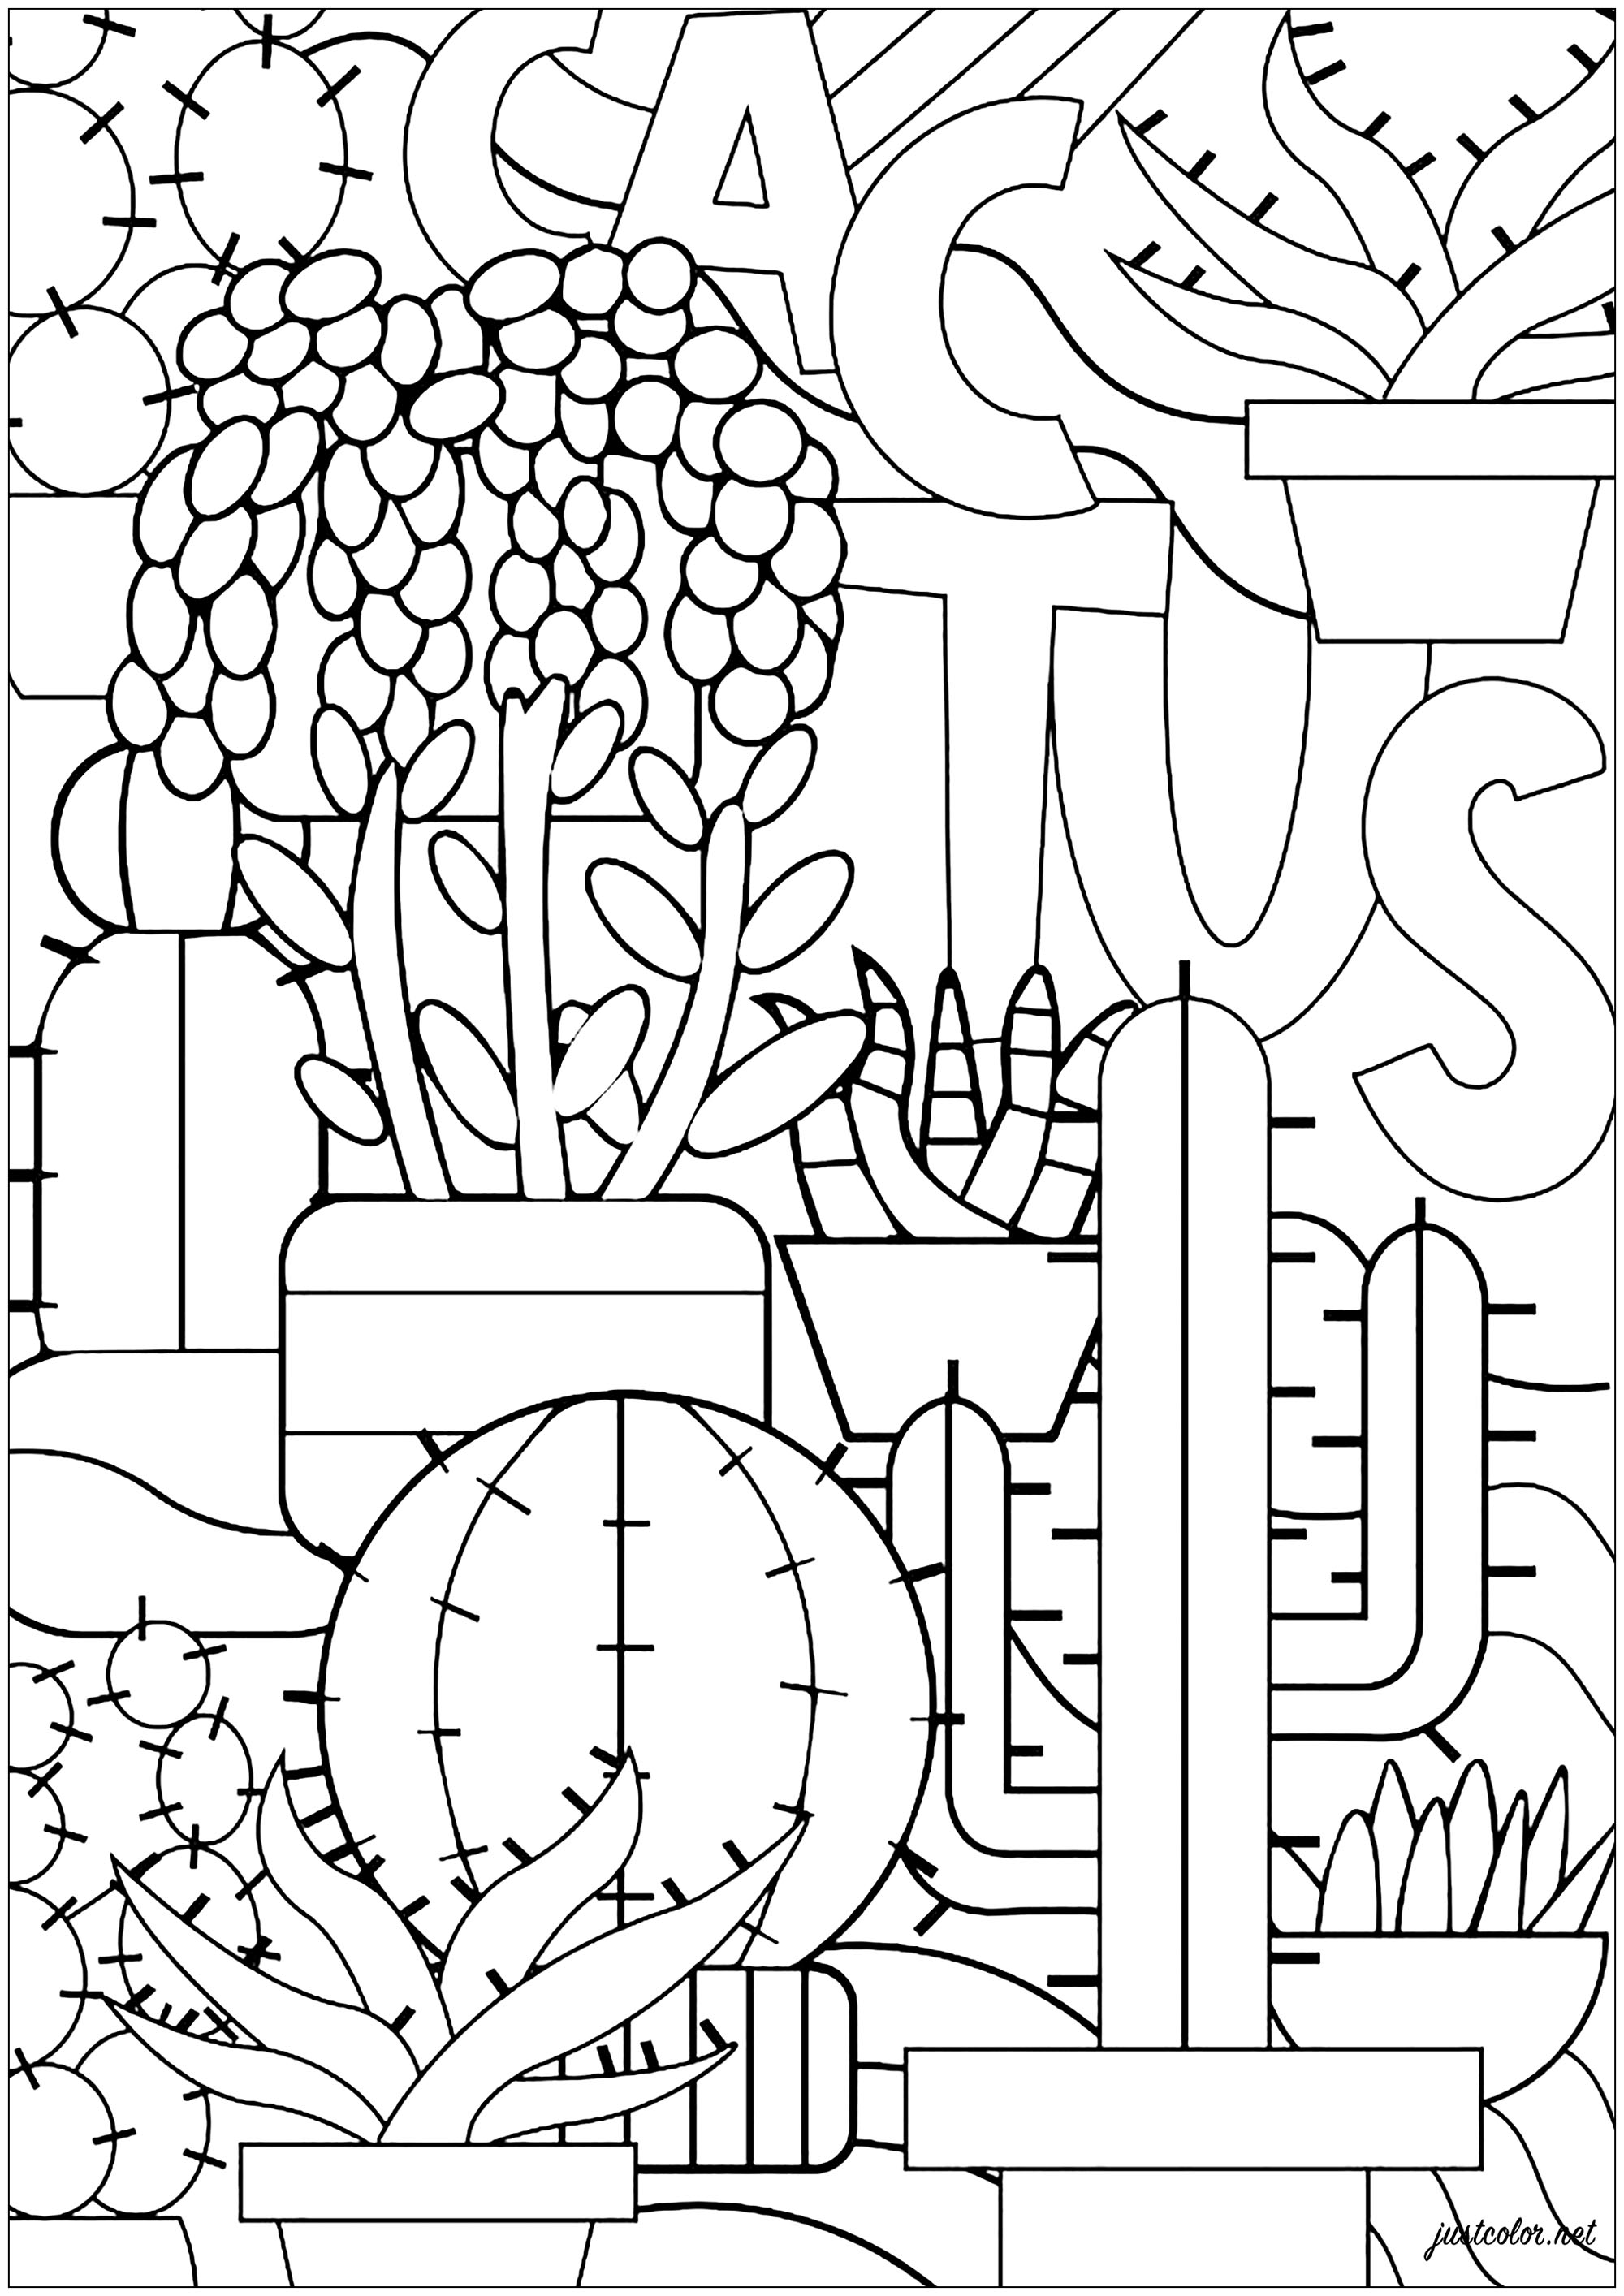 Diverses variétés de cactus à colorier, Artiste : Théo D